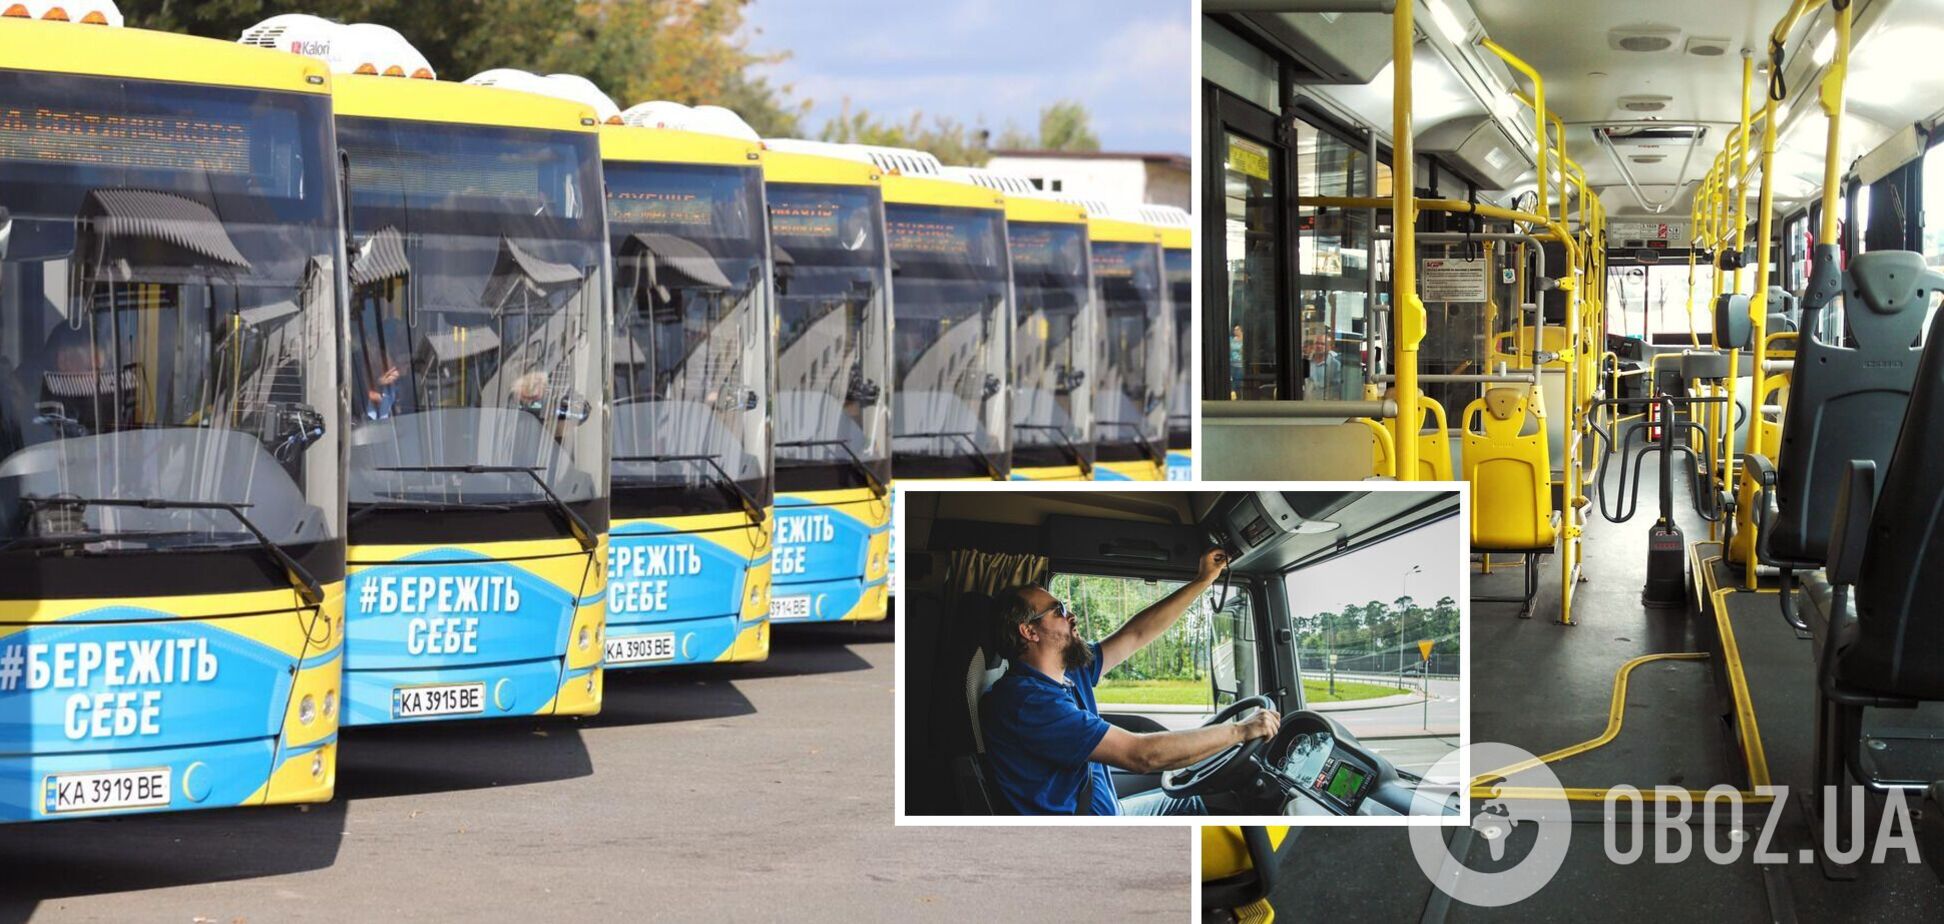 Общественный транспорт в Украине